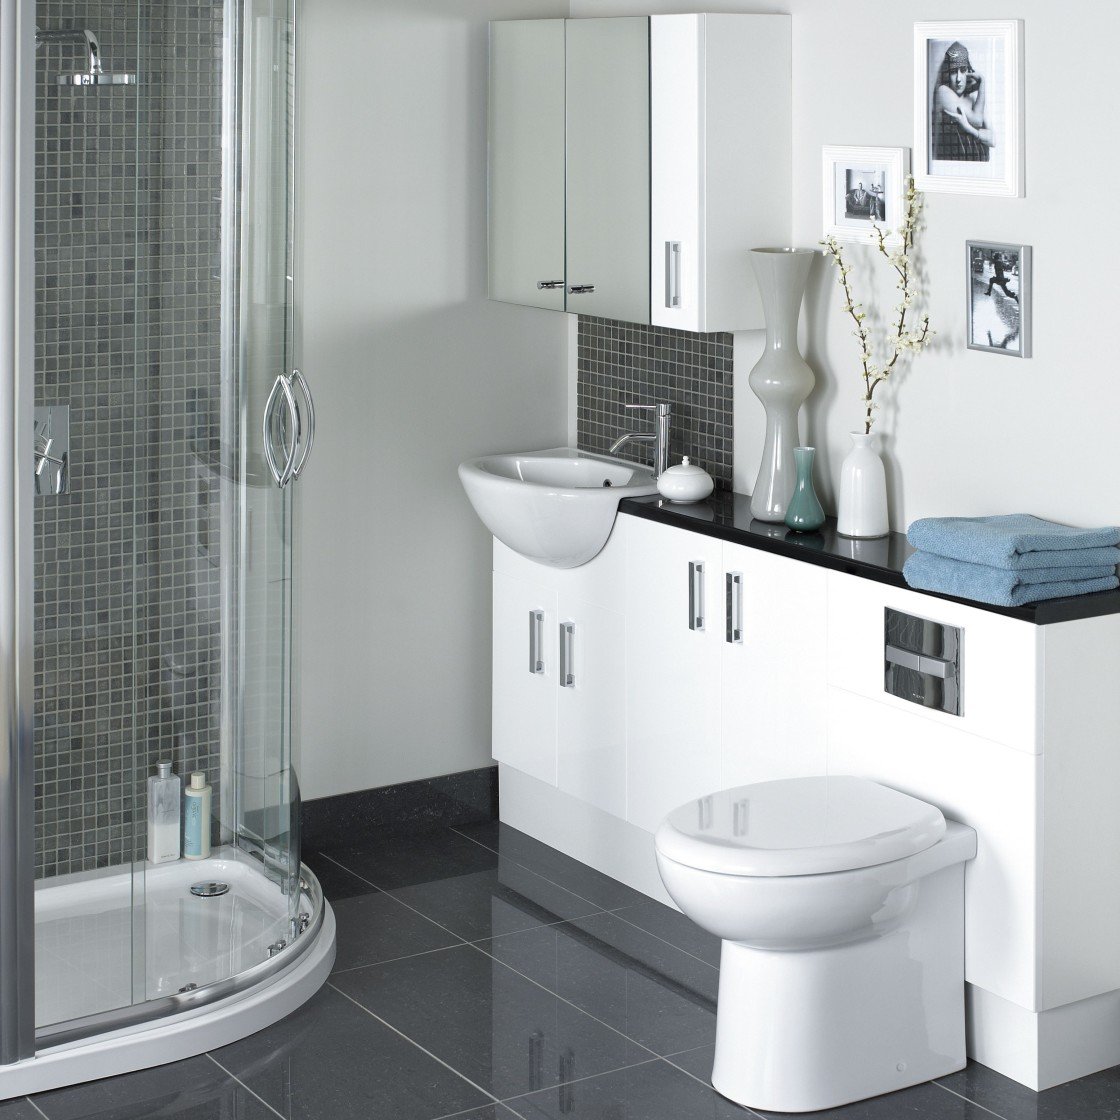 otdelka tualeta0099 2 - Дизайн туалета: варианты отделки